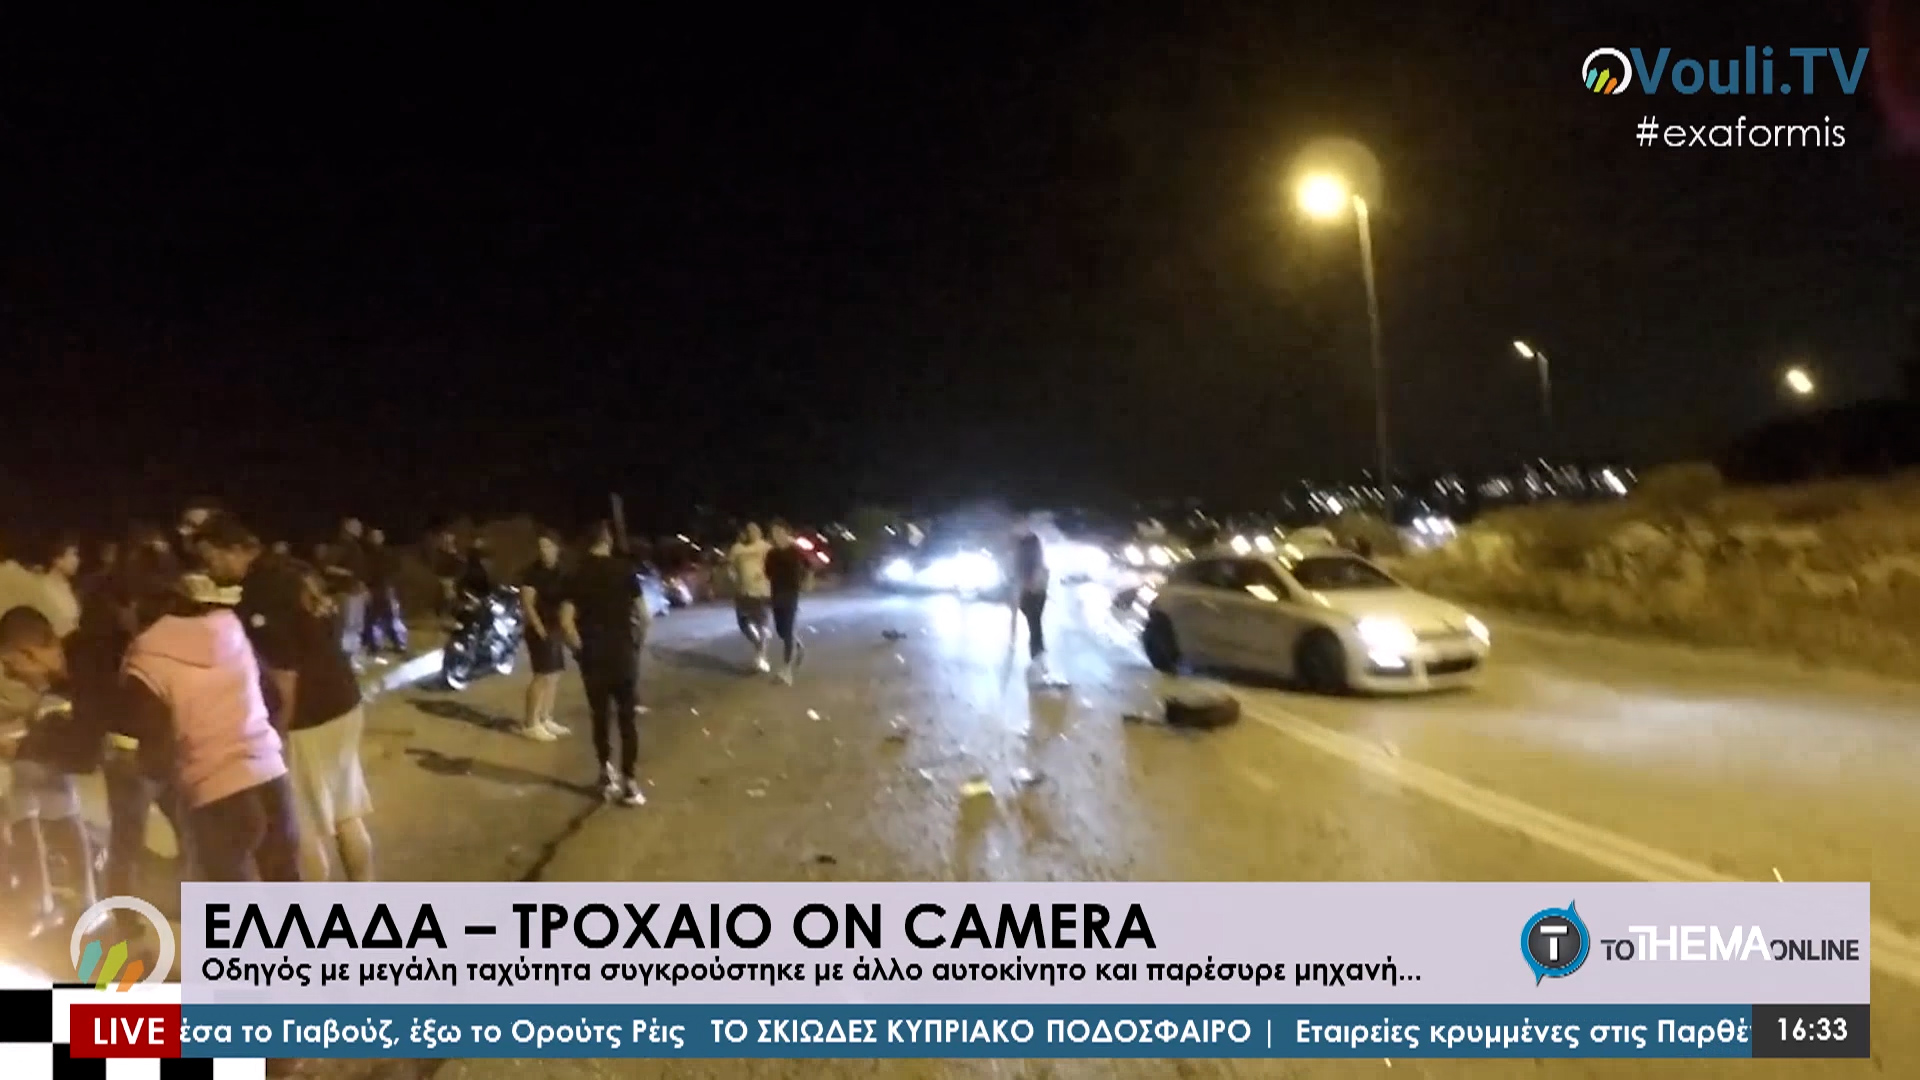 ΕΛΛΑΔΑ – ΤΡΟΧΑΙΟ ON CAMERA - Εξ Αφορμής @Vouli.TV | 5/10/2020